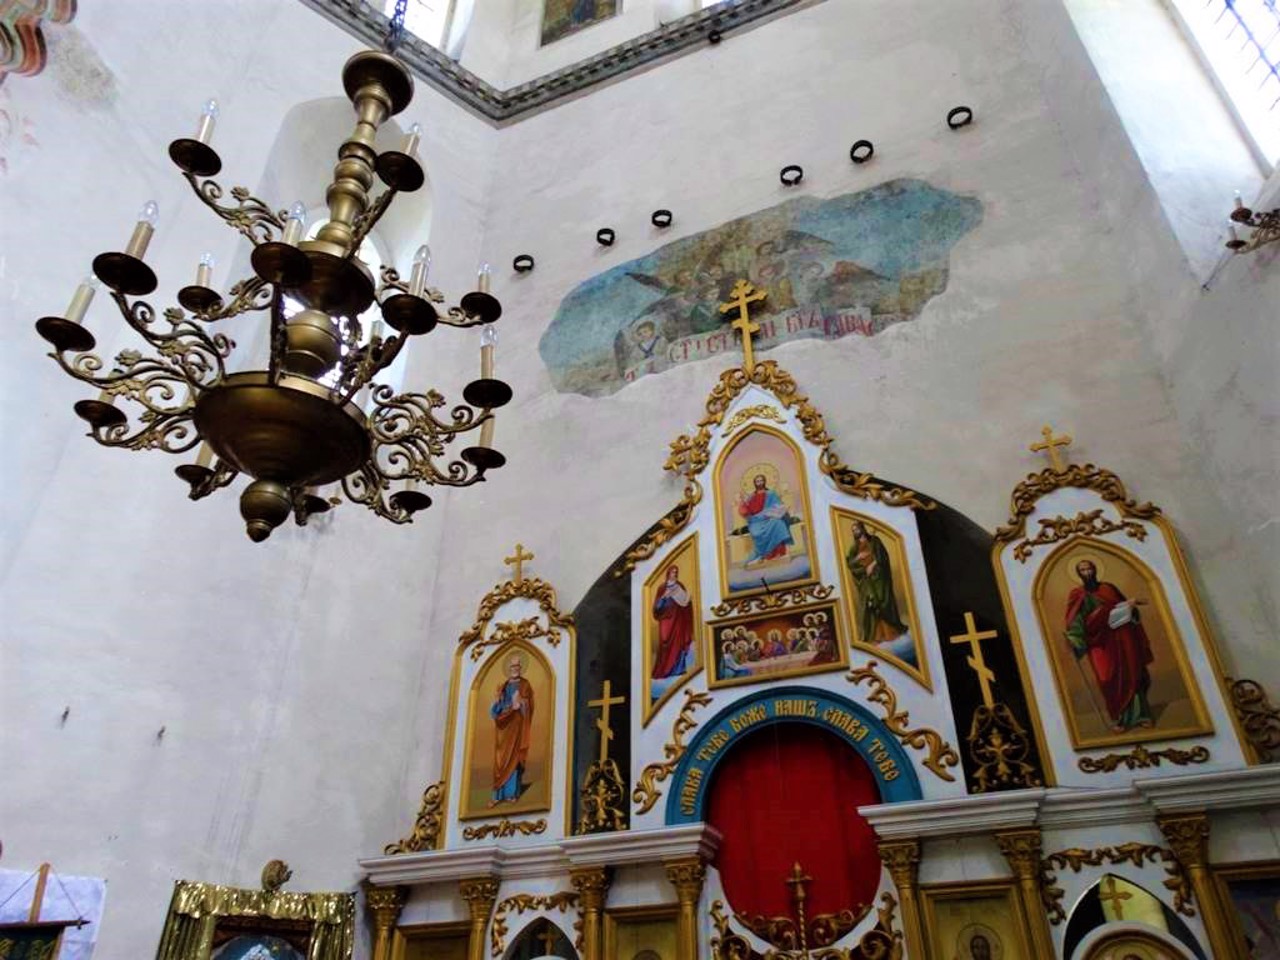 Воскресенская церковь, Седнев